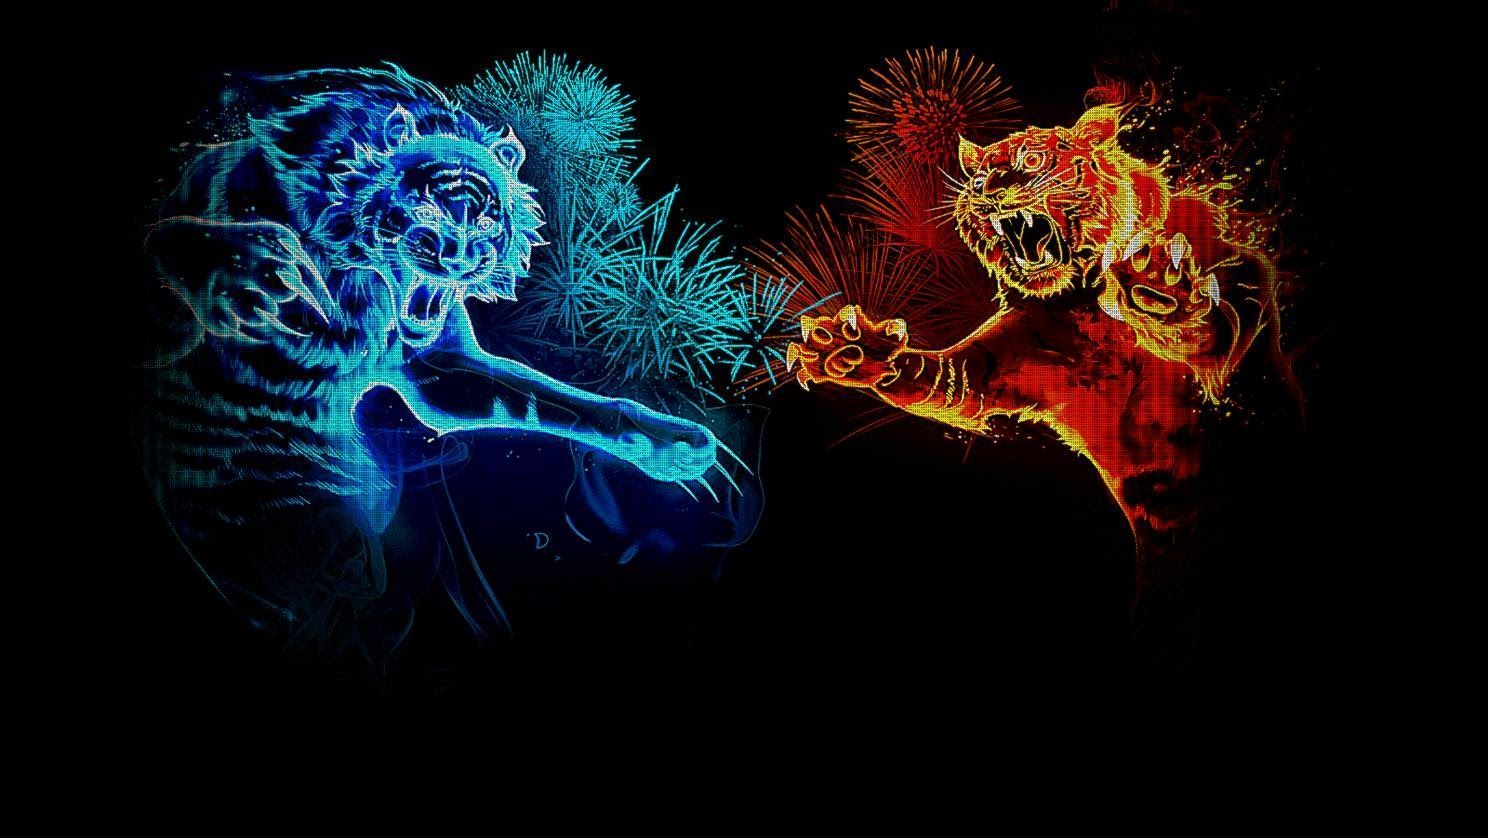 Download wallpaper 800x1280 tiger cub art cute sight samsung galaxy  note gtn7000 meizu mx2 hd background